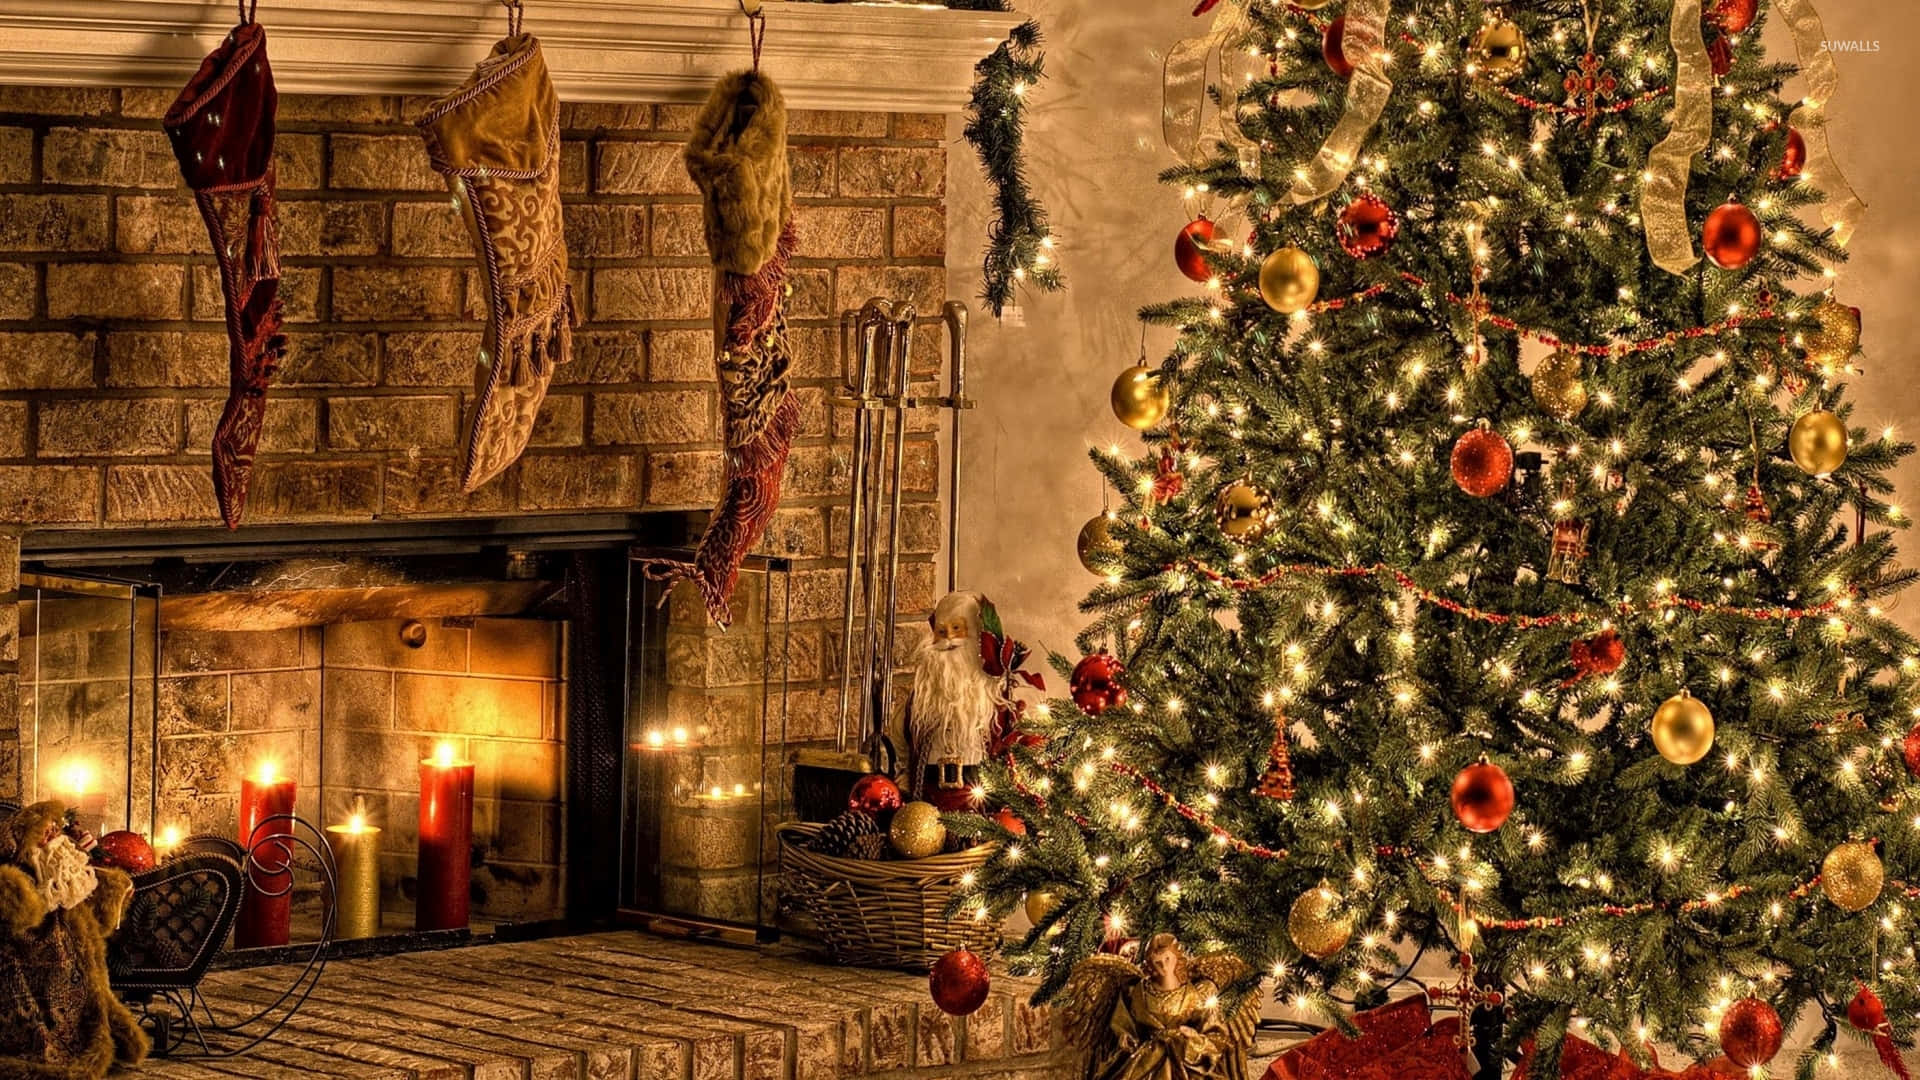 Free Christmas Background Christmas Stockings And Christmas Tree